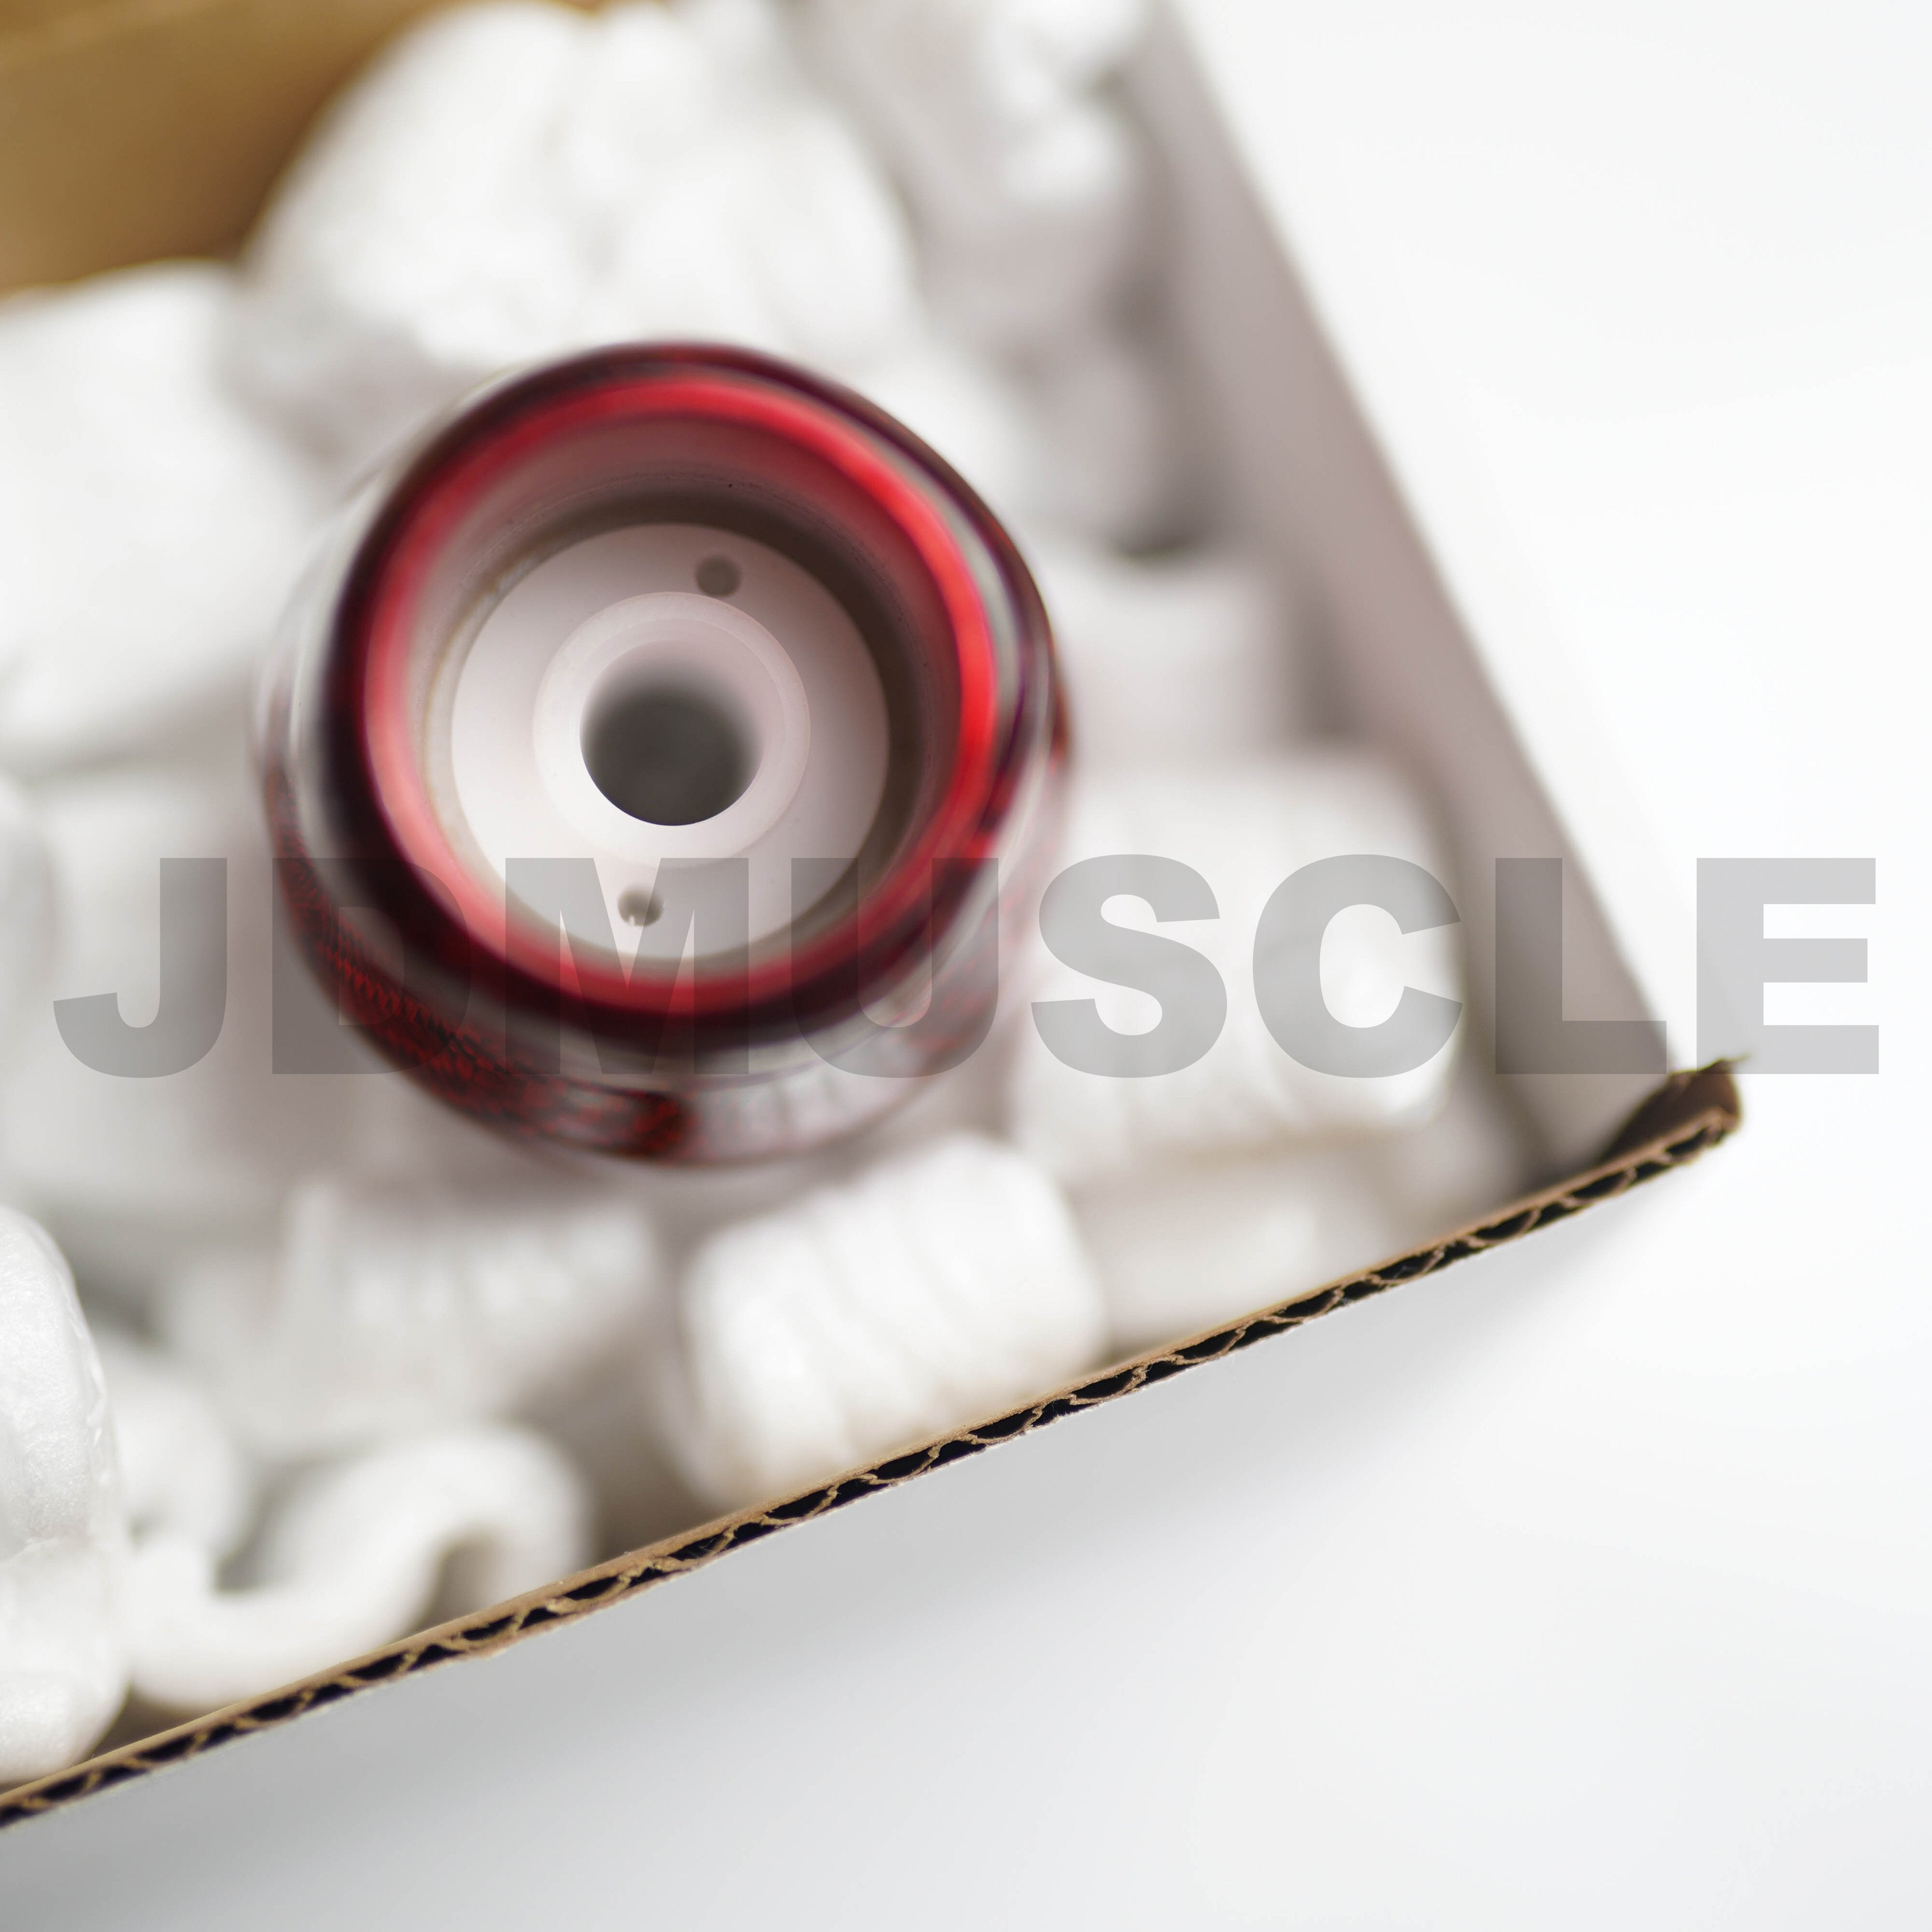 Cylinder Carbon Fiber Resin Shift Knob - Top JDM Store